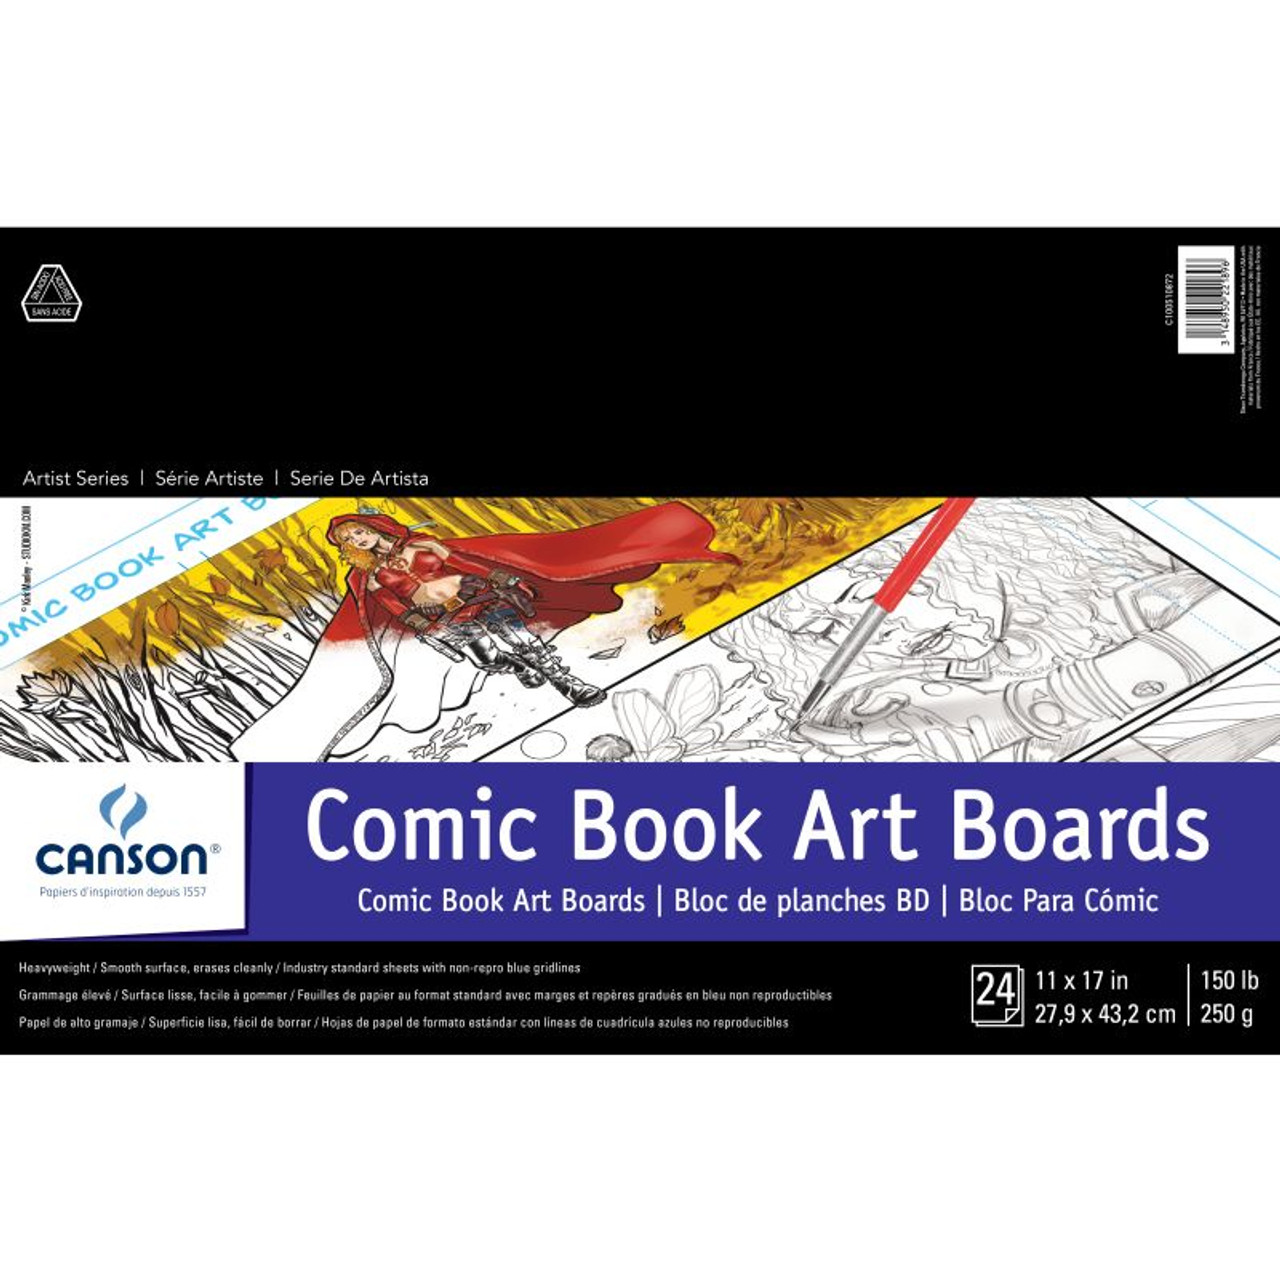 Comic Book Art Boards - FLAX art & design